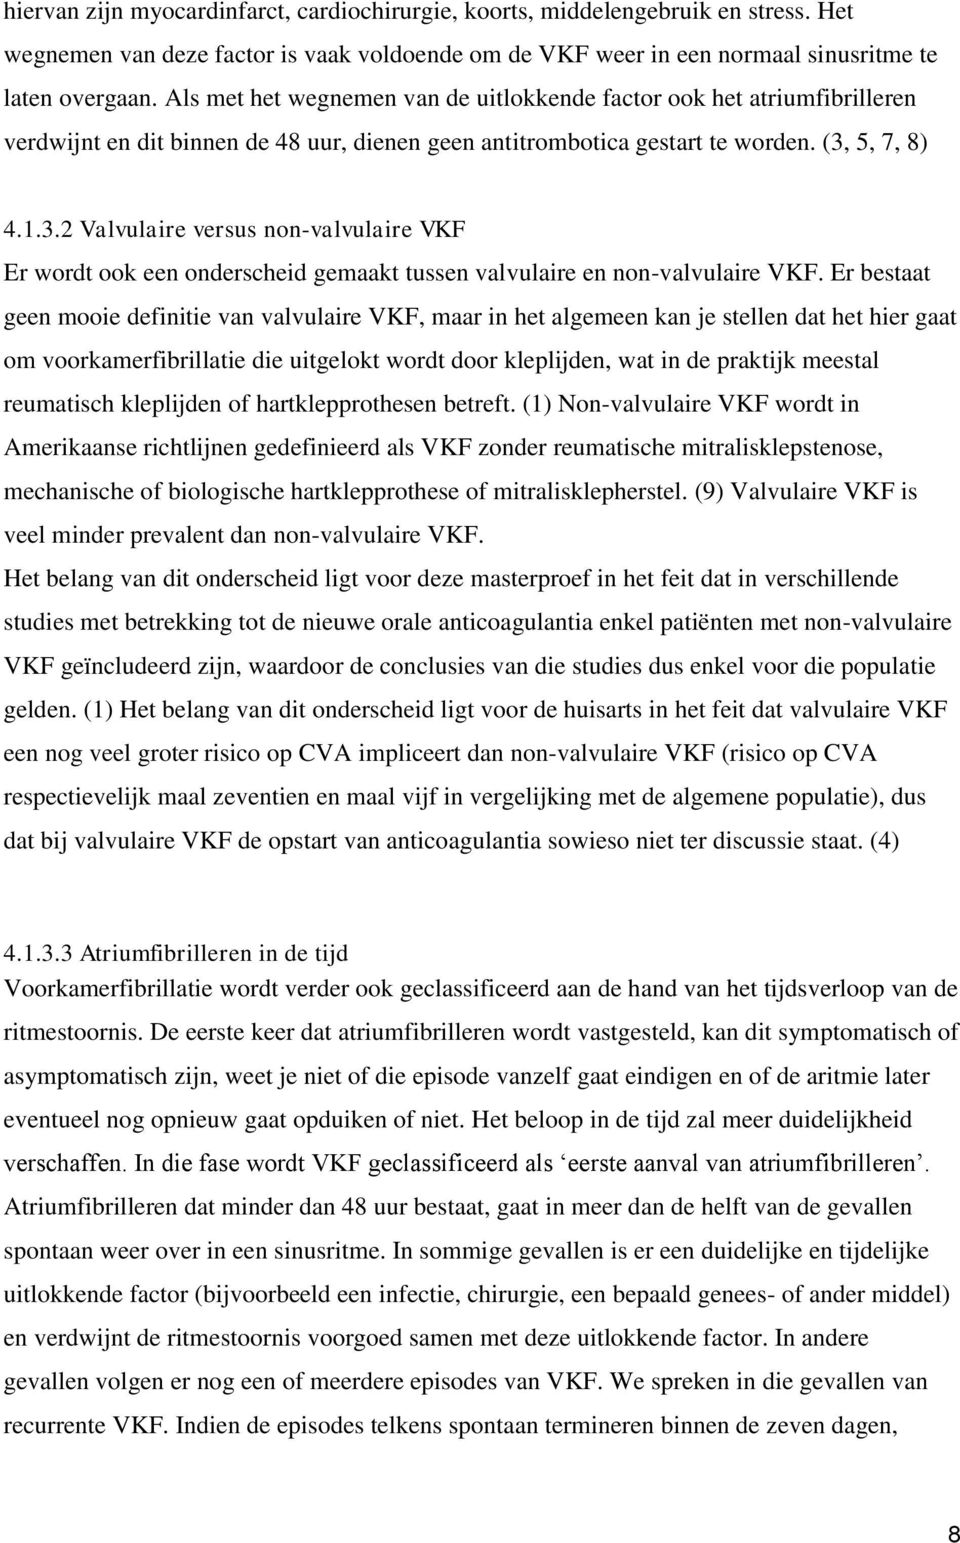 5, 7, 8) 4.1.3.2 Valvulaire versus non-valvulaire VKF Er wordt ook een onderscheid gemaakt tussen valvulaire en non-valvulaire VKF.